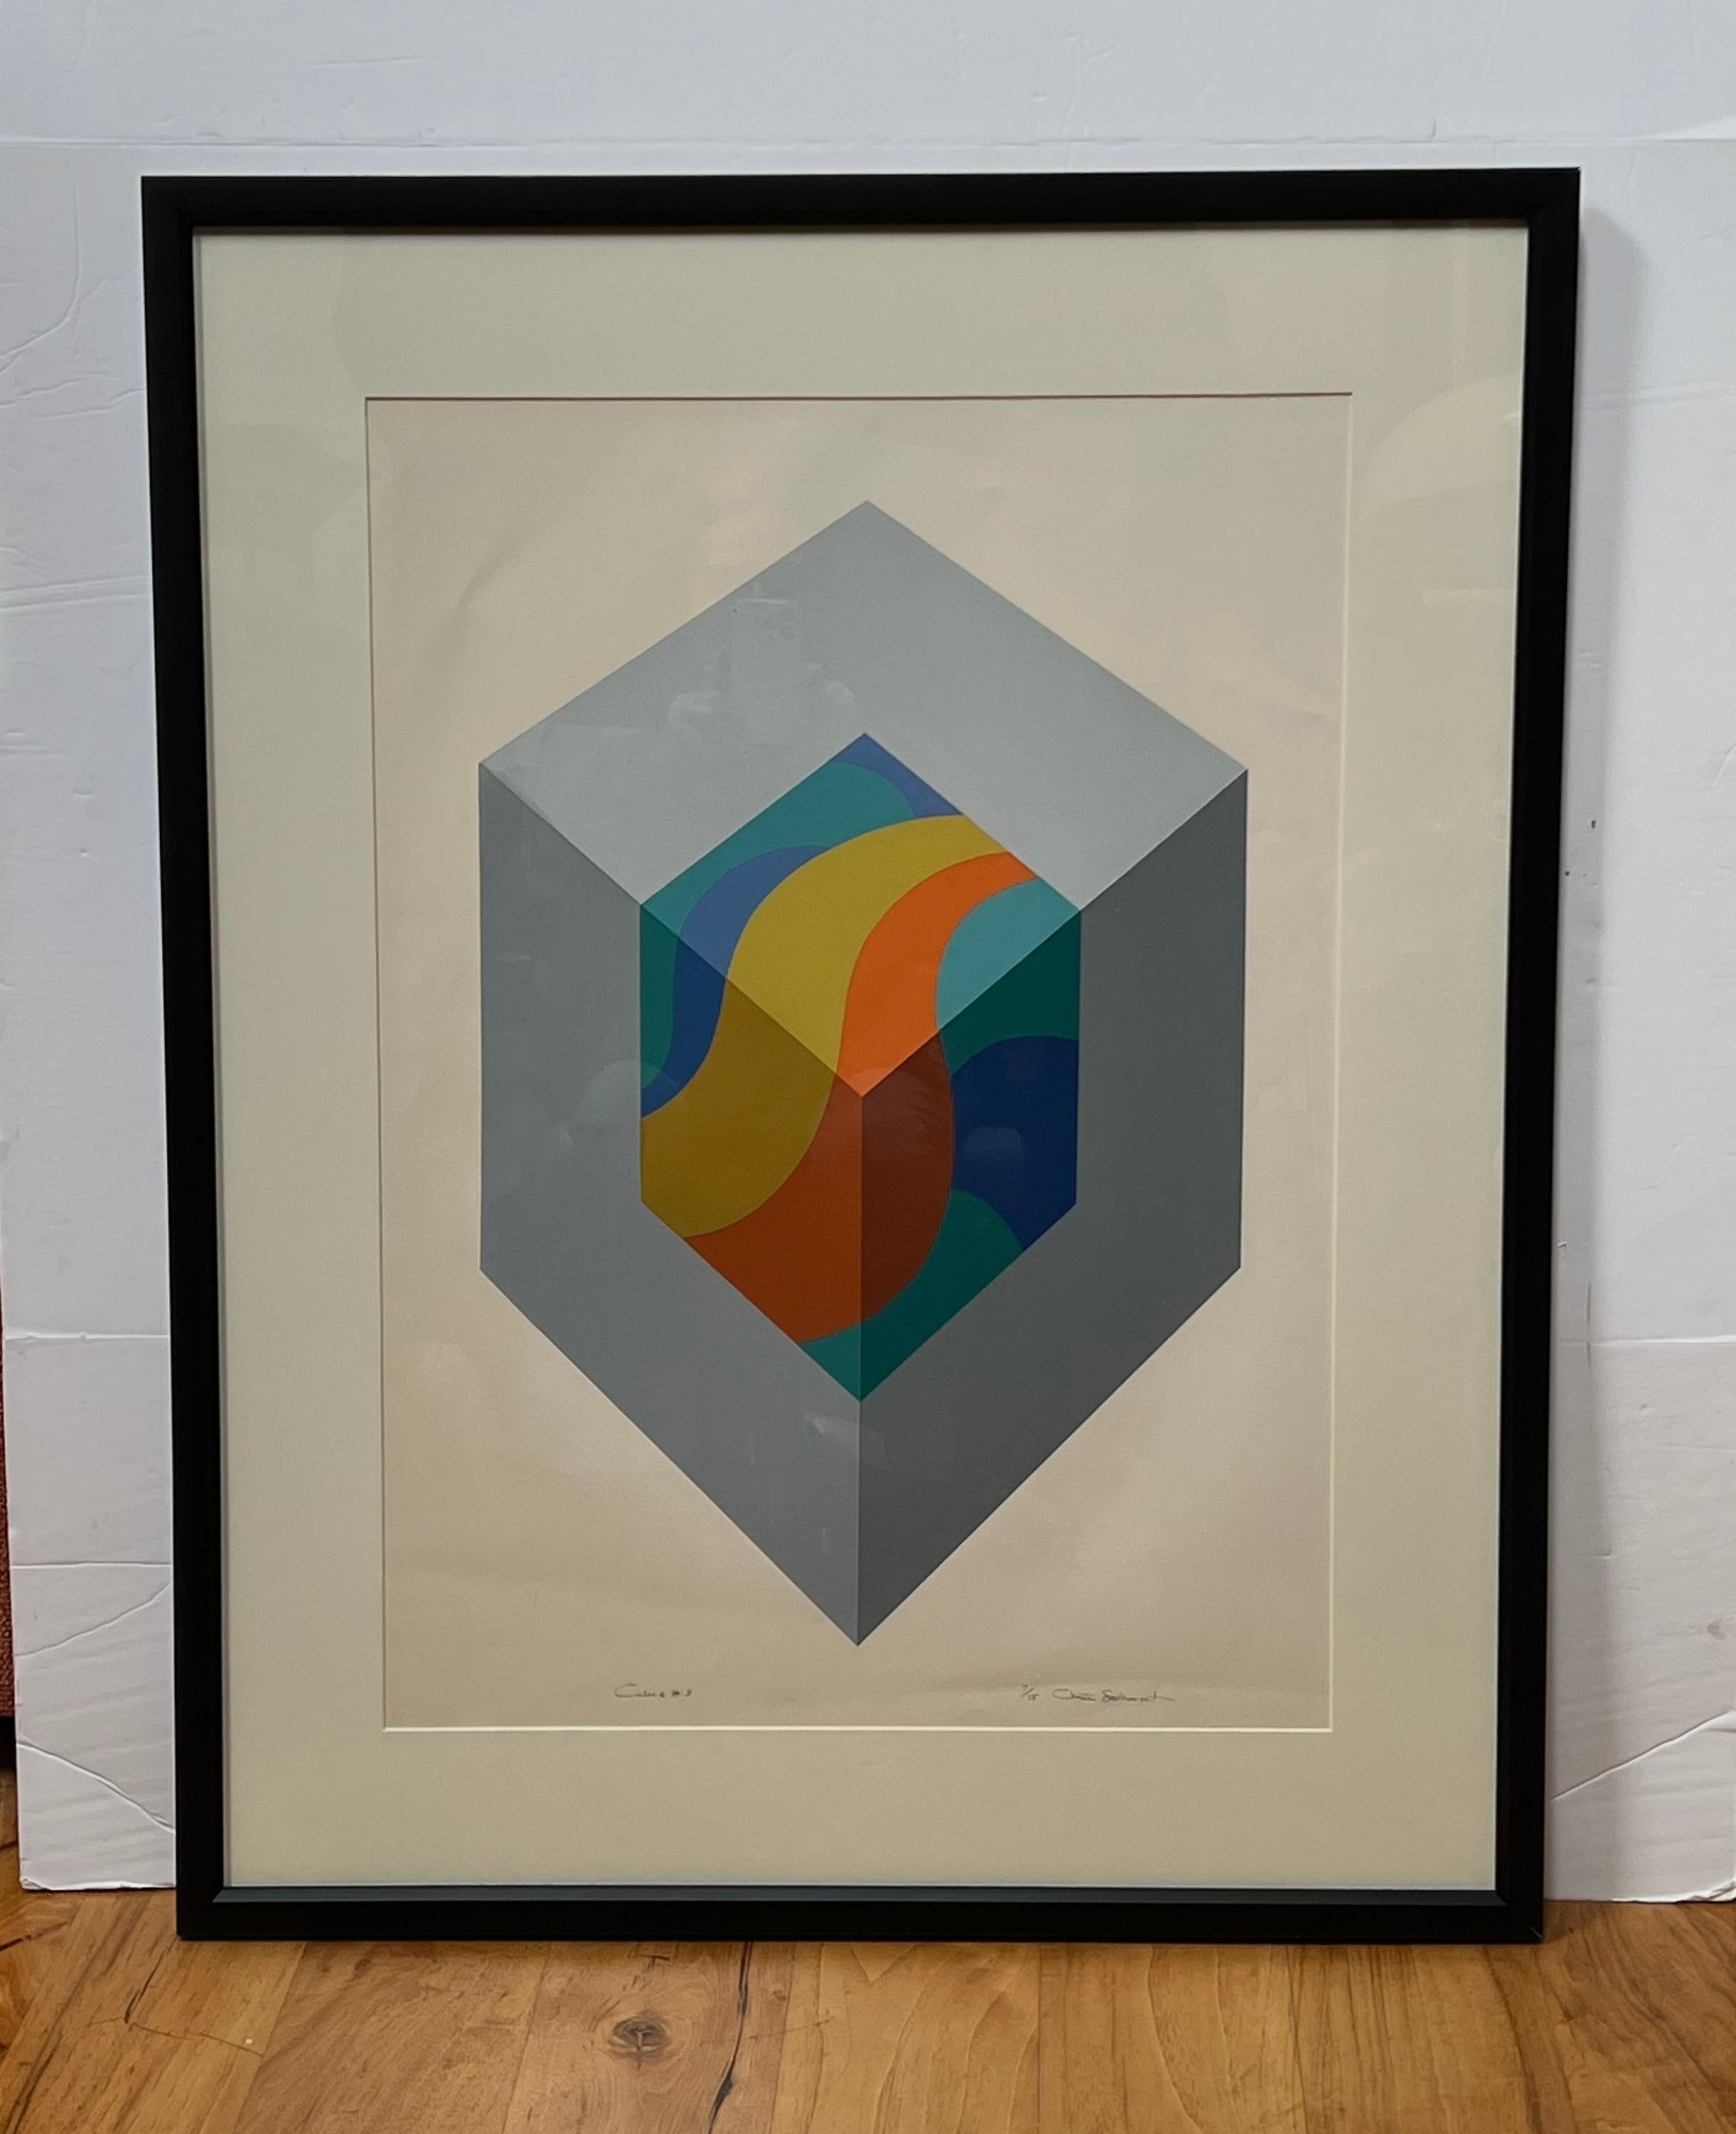 Lithographie constructiviste « Cube #3 » de Chester Solomont